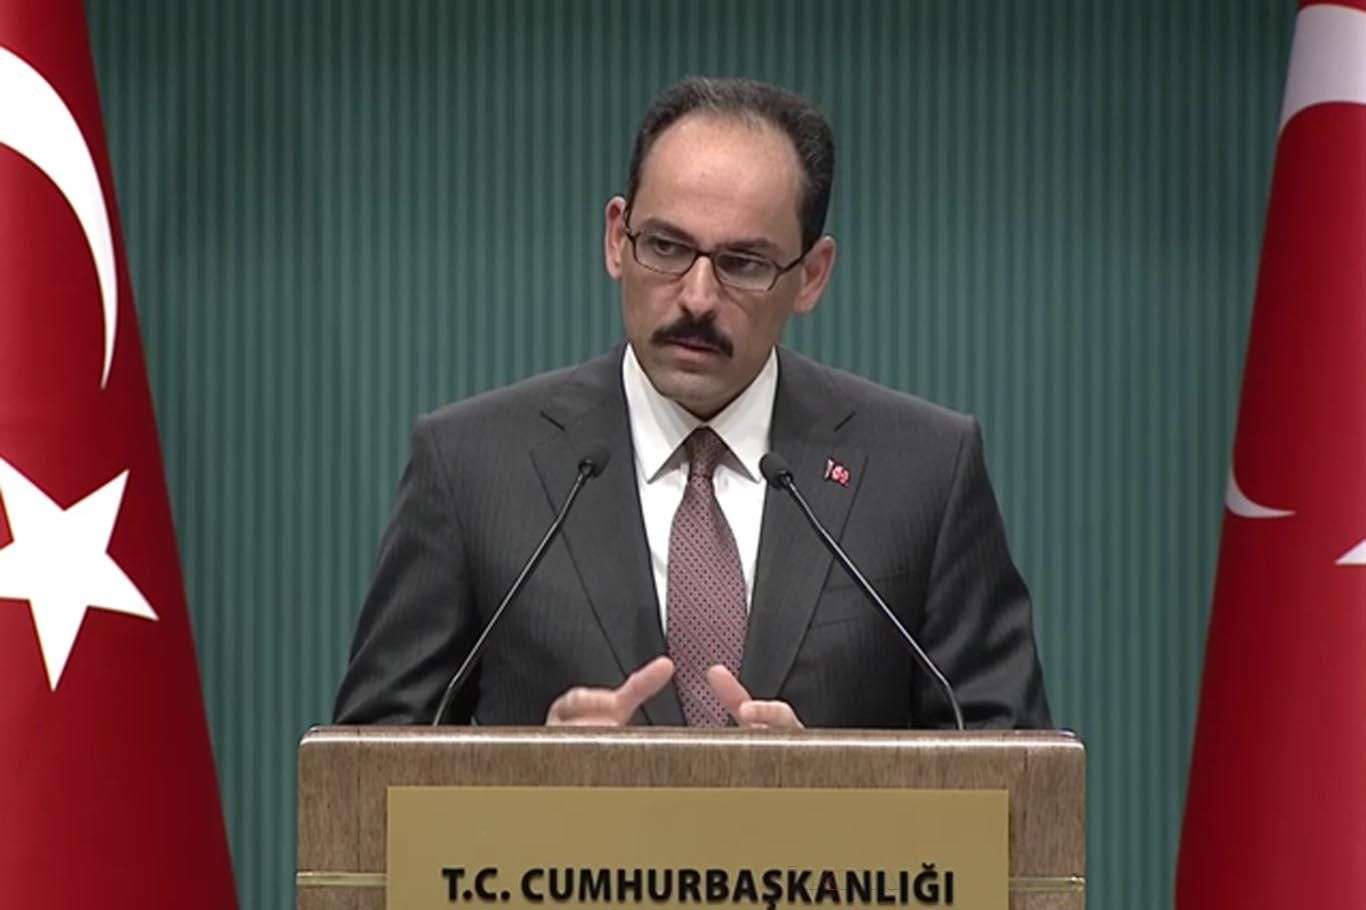 Cumhurbaşkanlığı Sözcüsü Kalın: "Azerbaycan Türkiye'nin tam desteğine sahiptir"